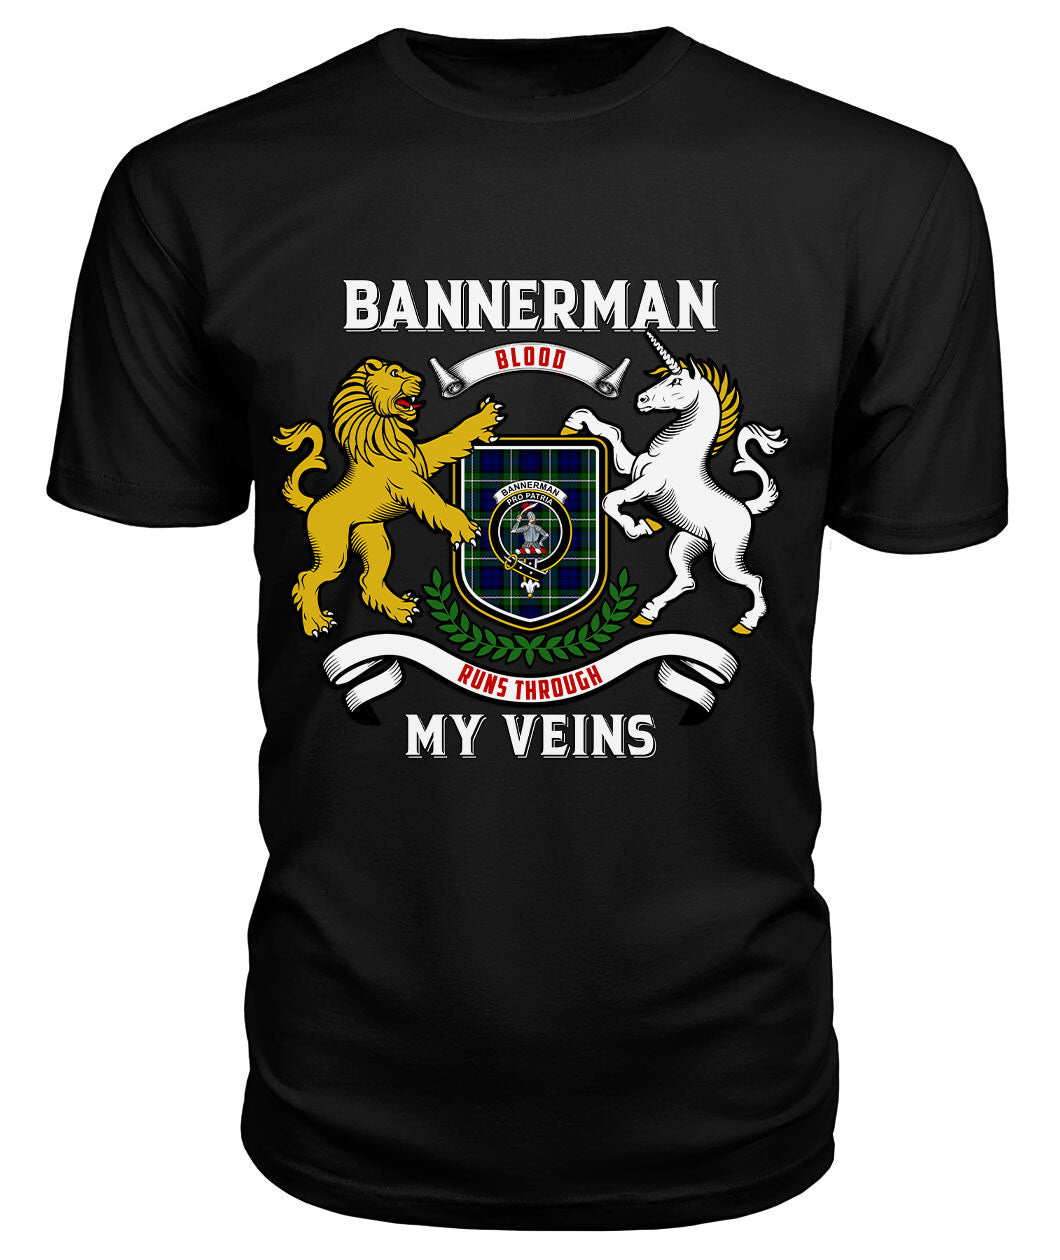 Bannerman Tartan Crest 2D T-shirt - Blood Runs Through My Veins Style